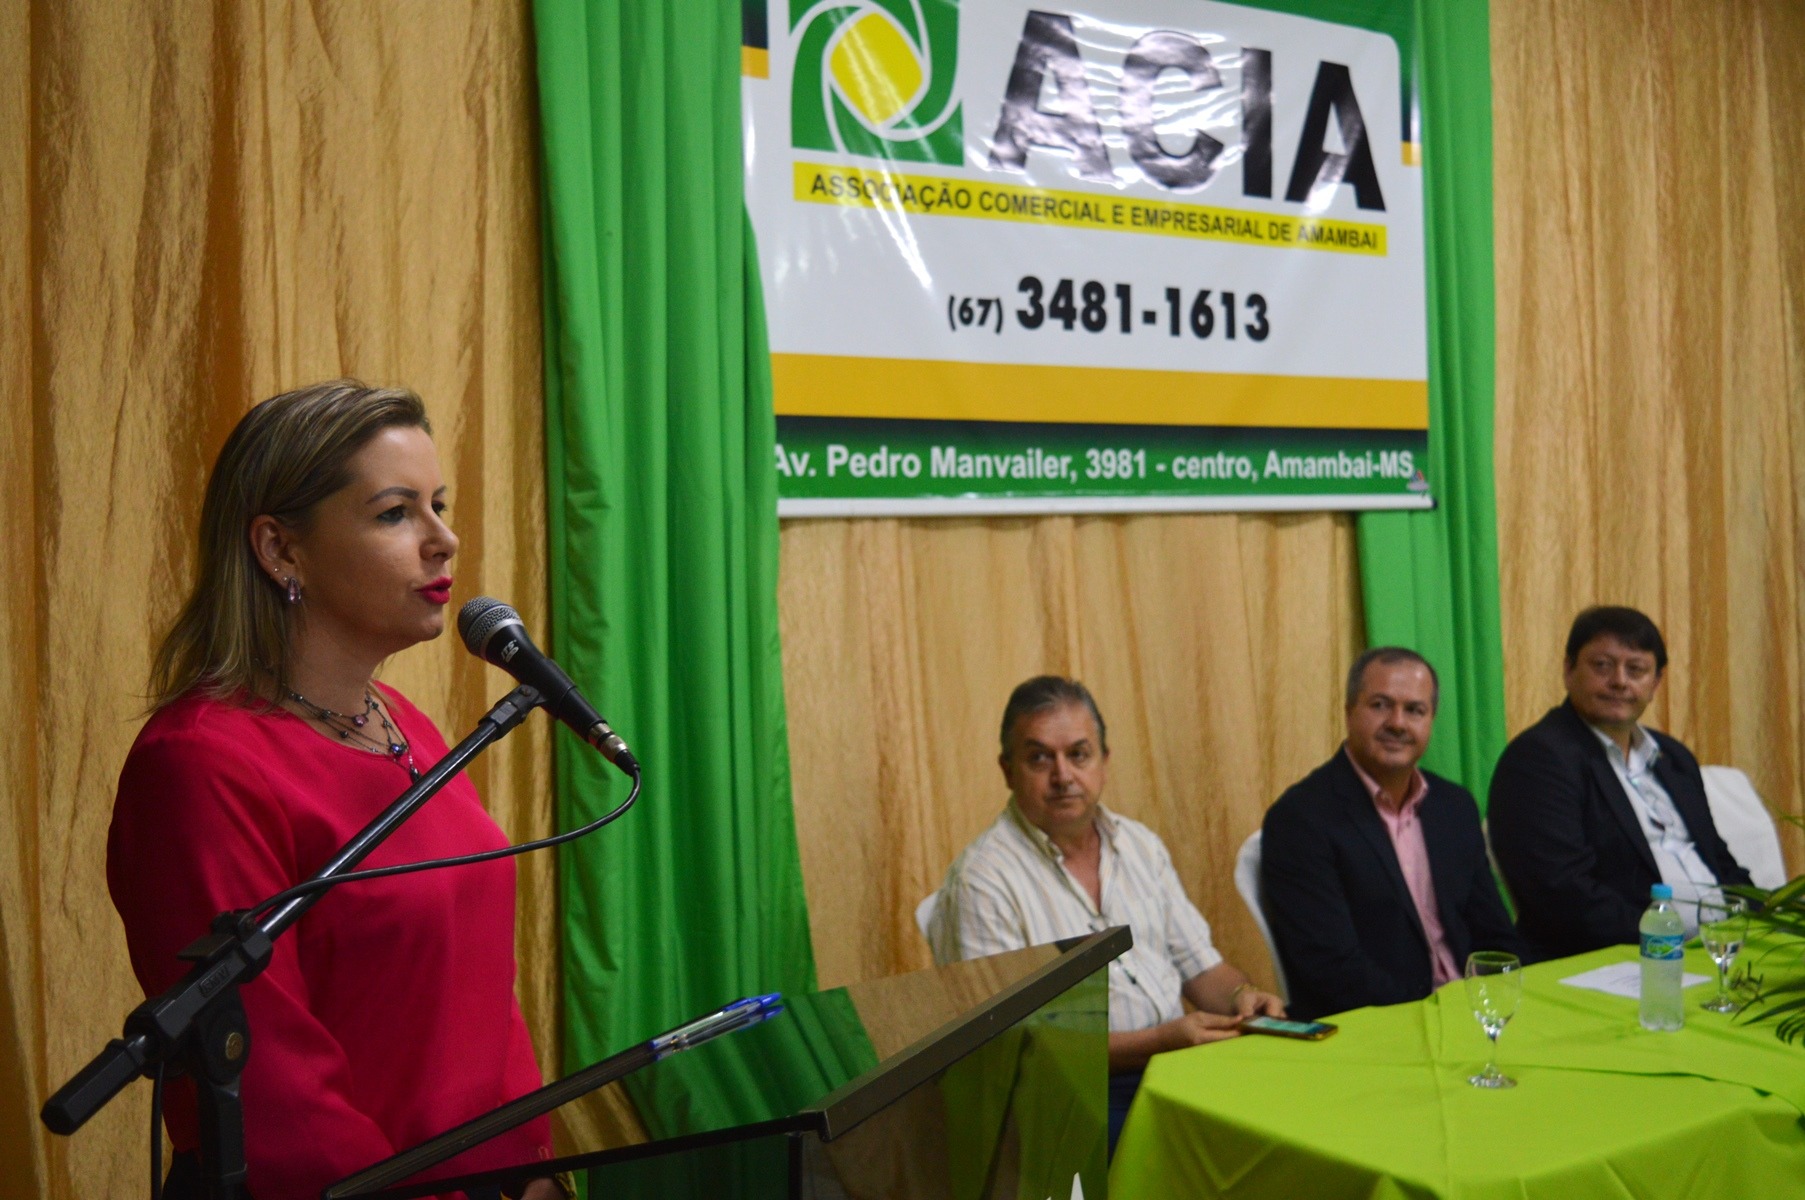 Presidenta do legislativo, vereador Janete Córdoba / Foto: Moreira Produções